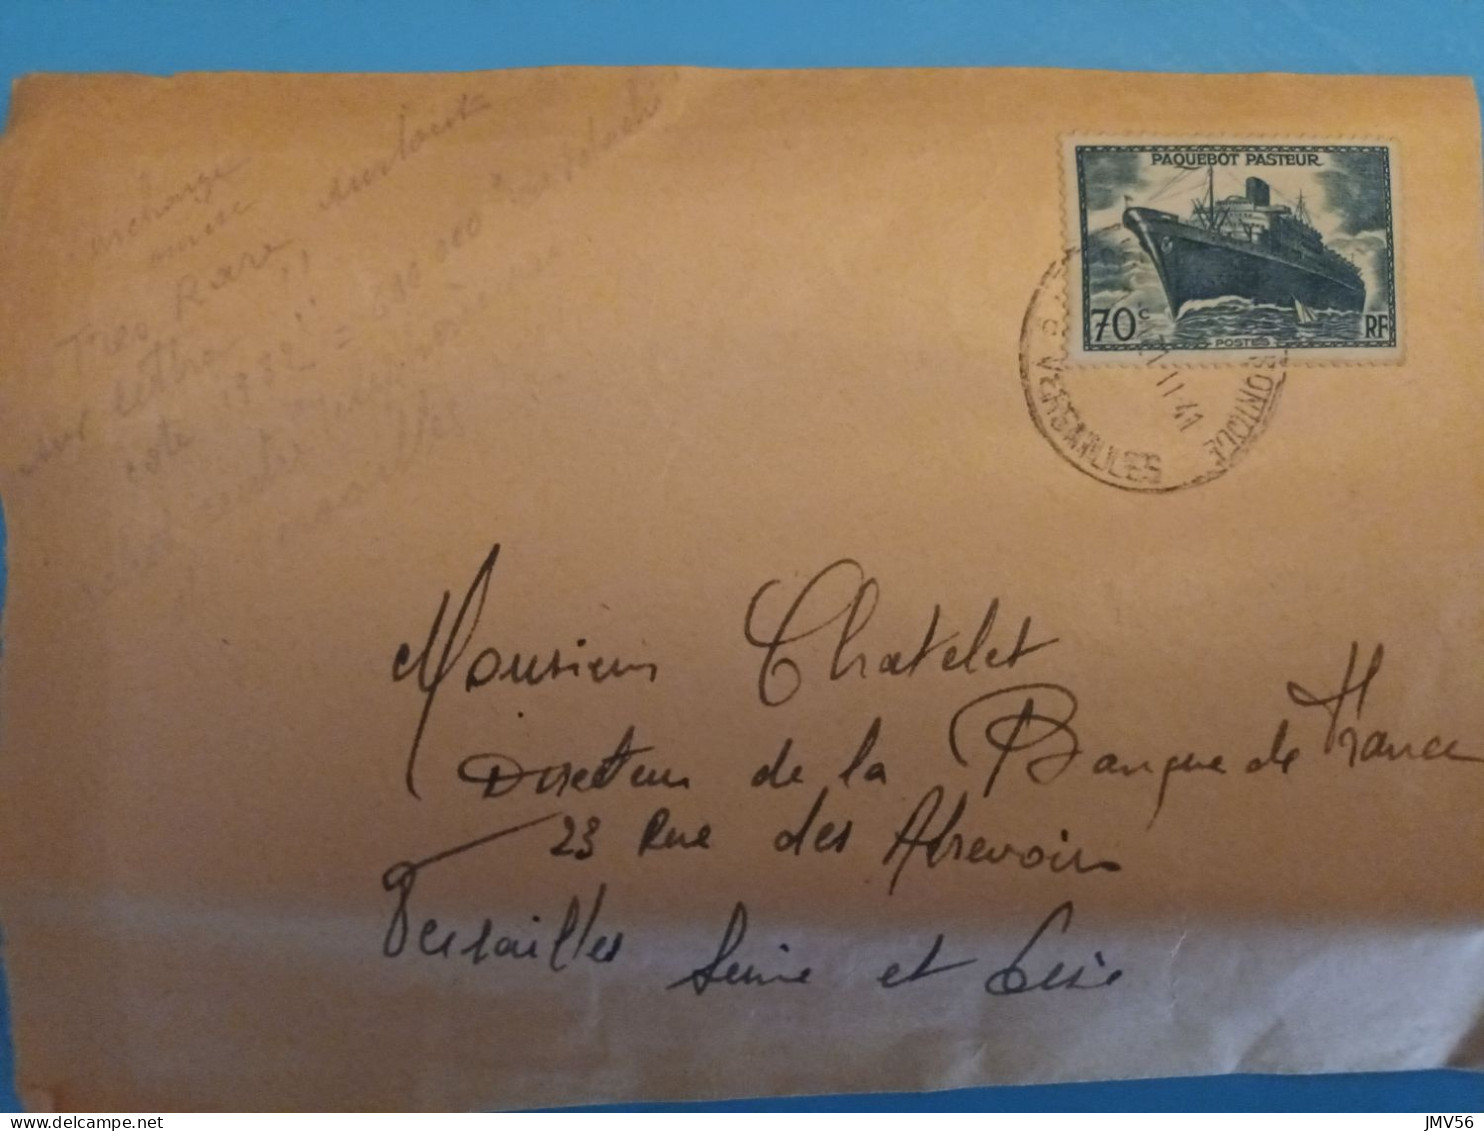 Paquebot PASTEUR Sans Surchargé Sur Env. Avec Date Versailles  Du 11/1941 - Usati